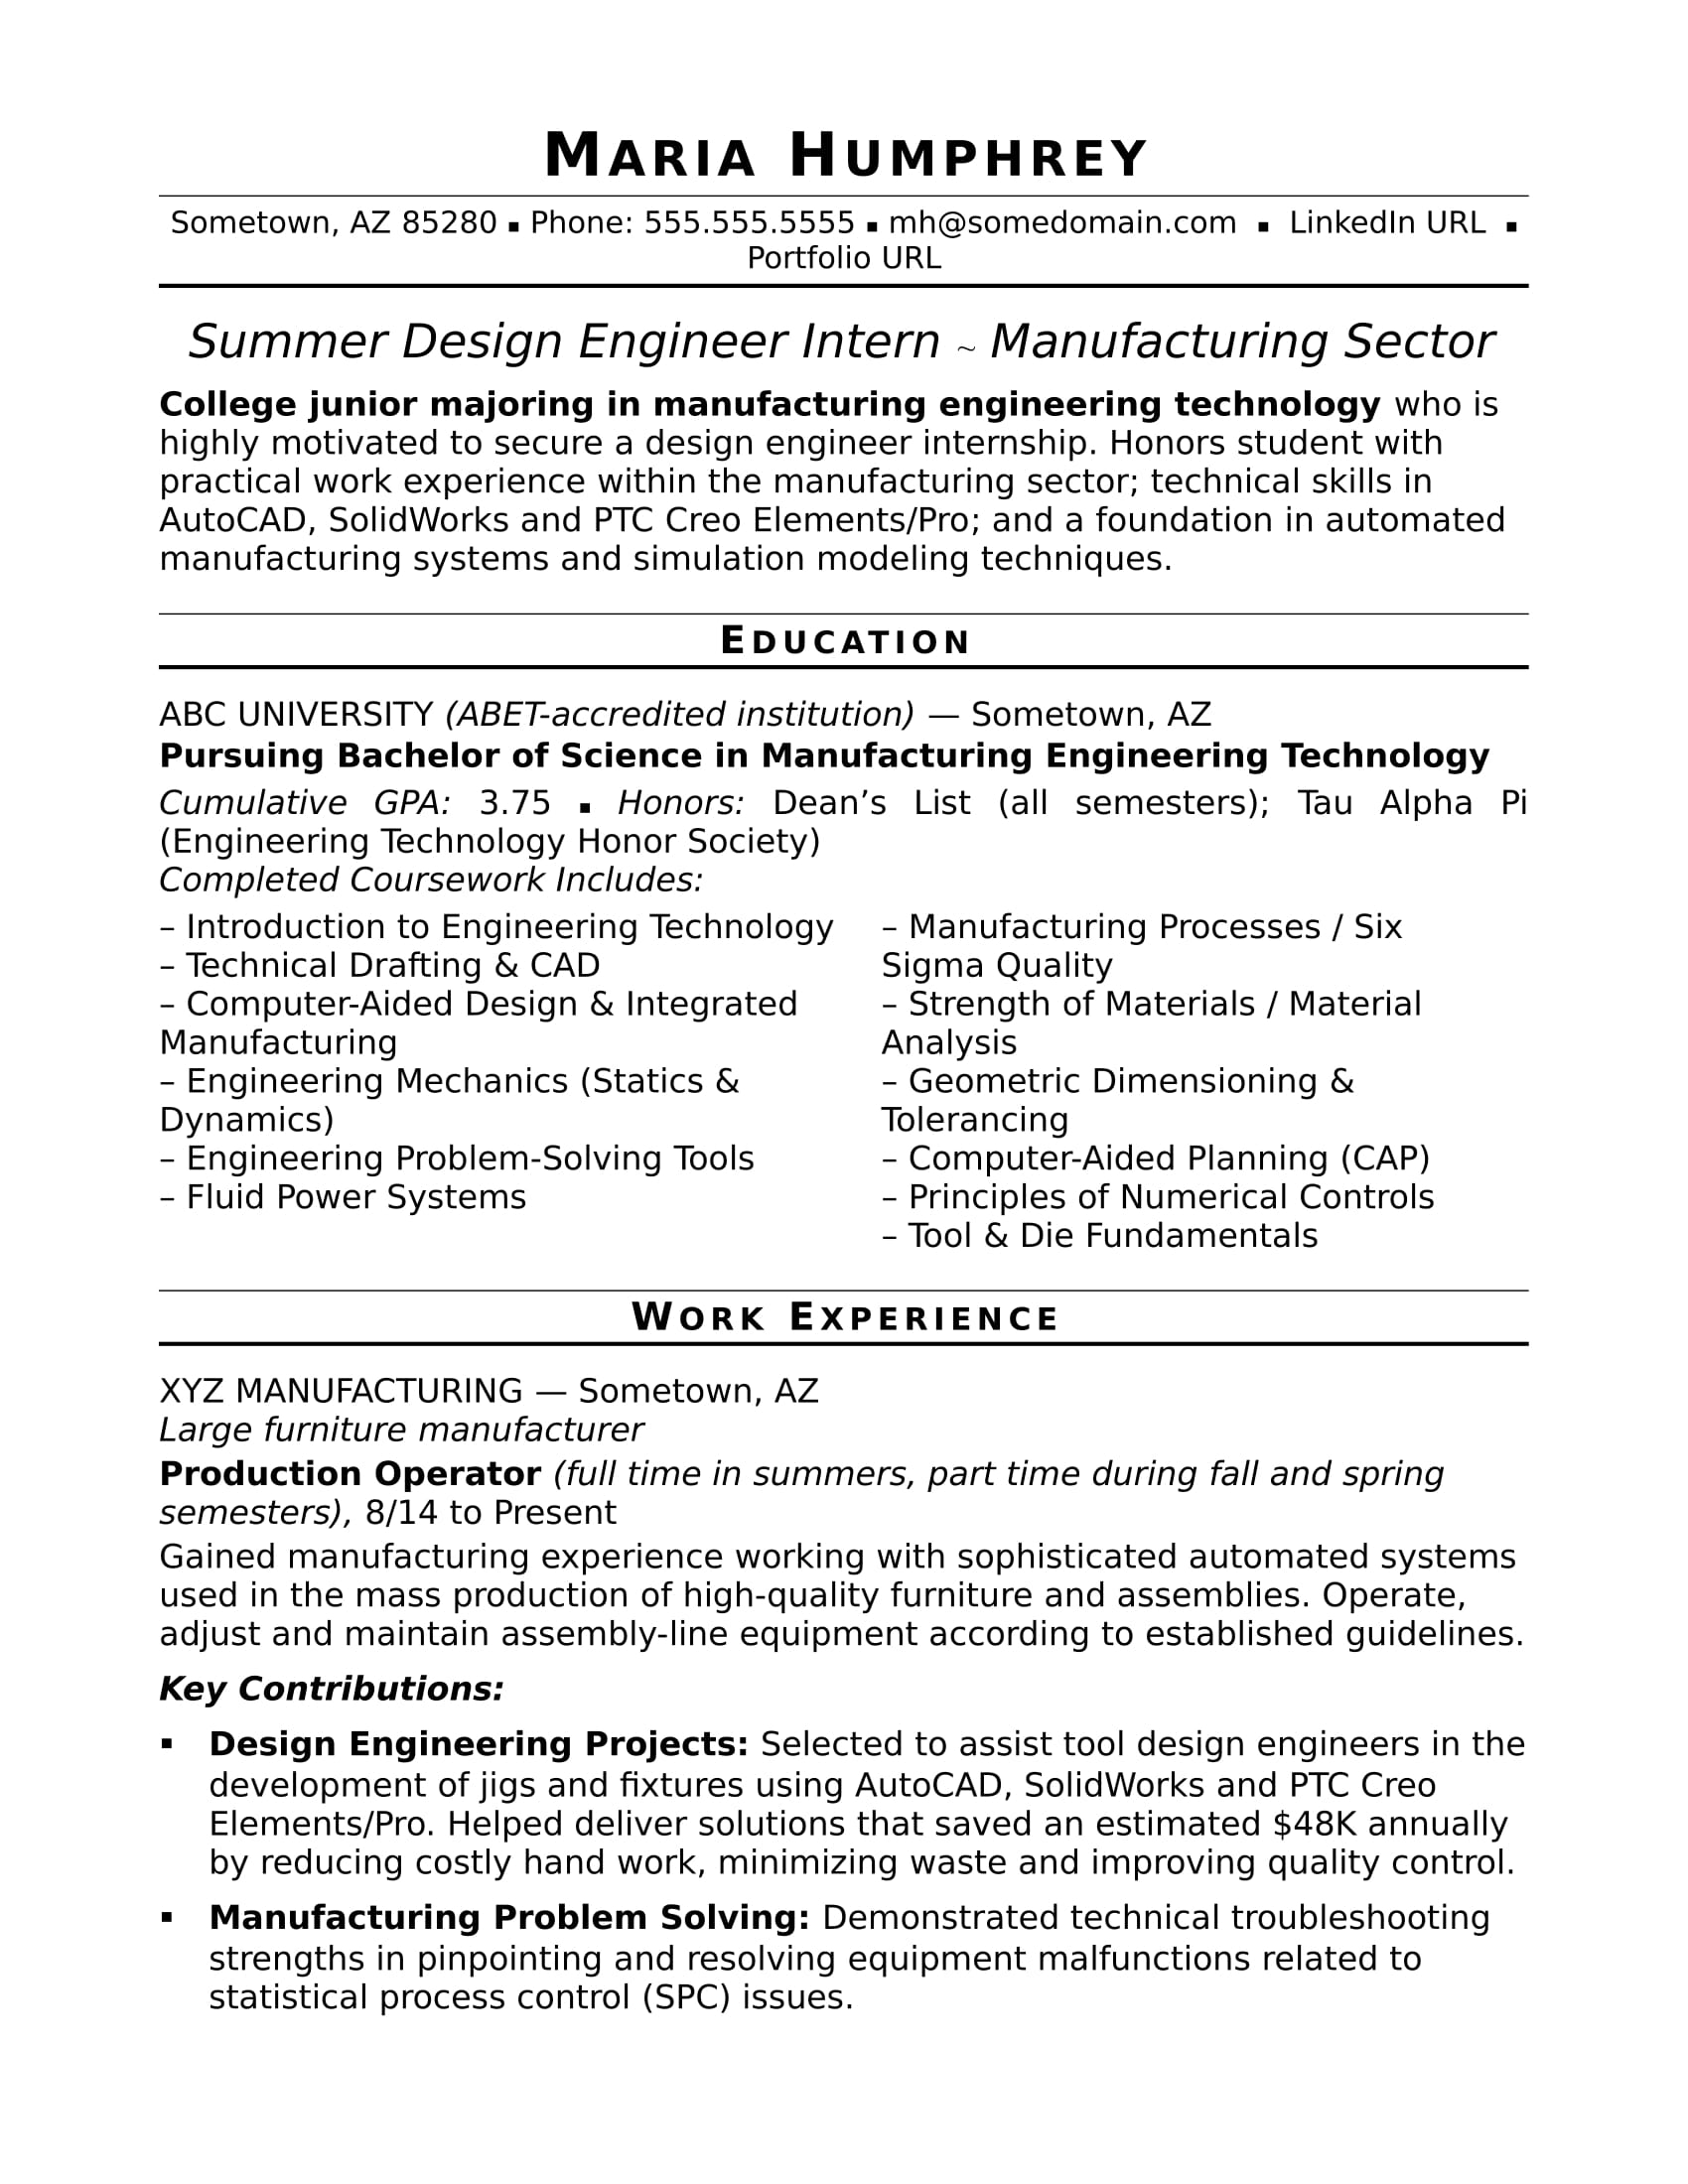 Sample Resume For An Entry Level Design Engineer Monster